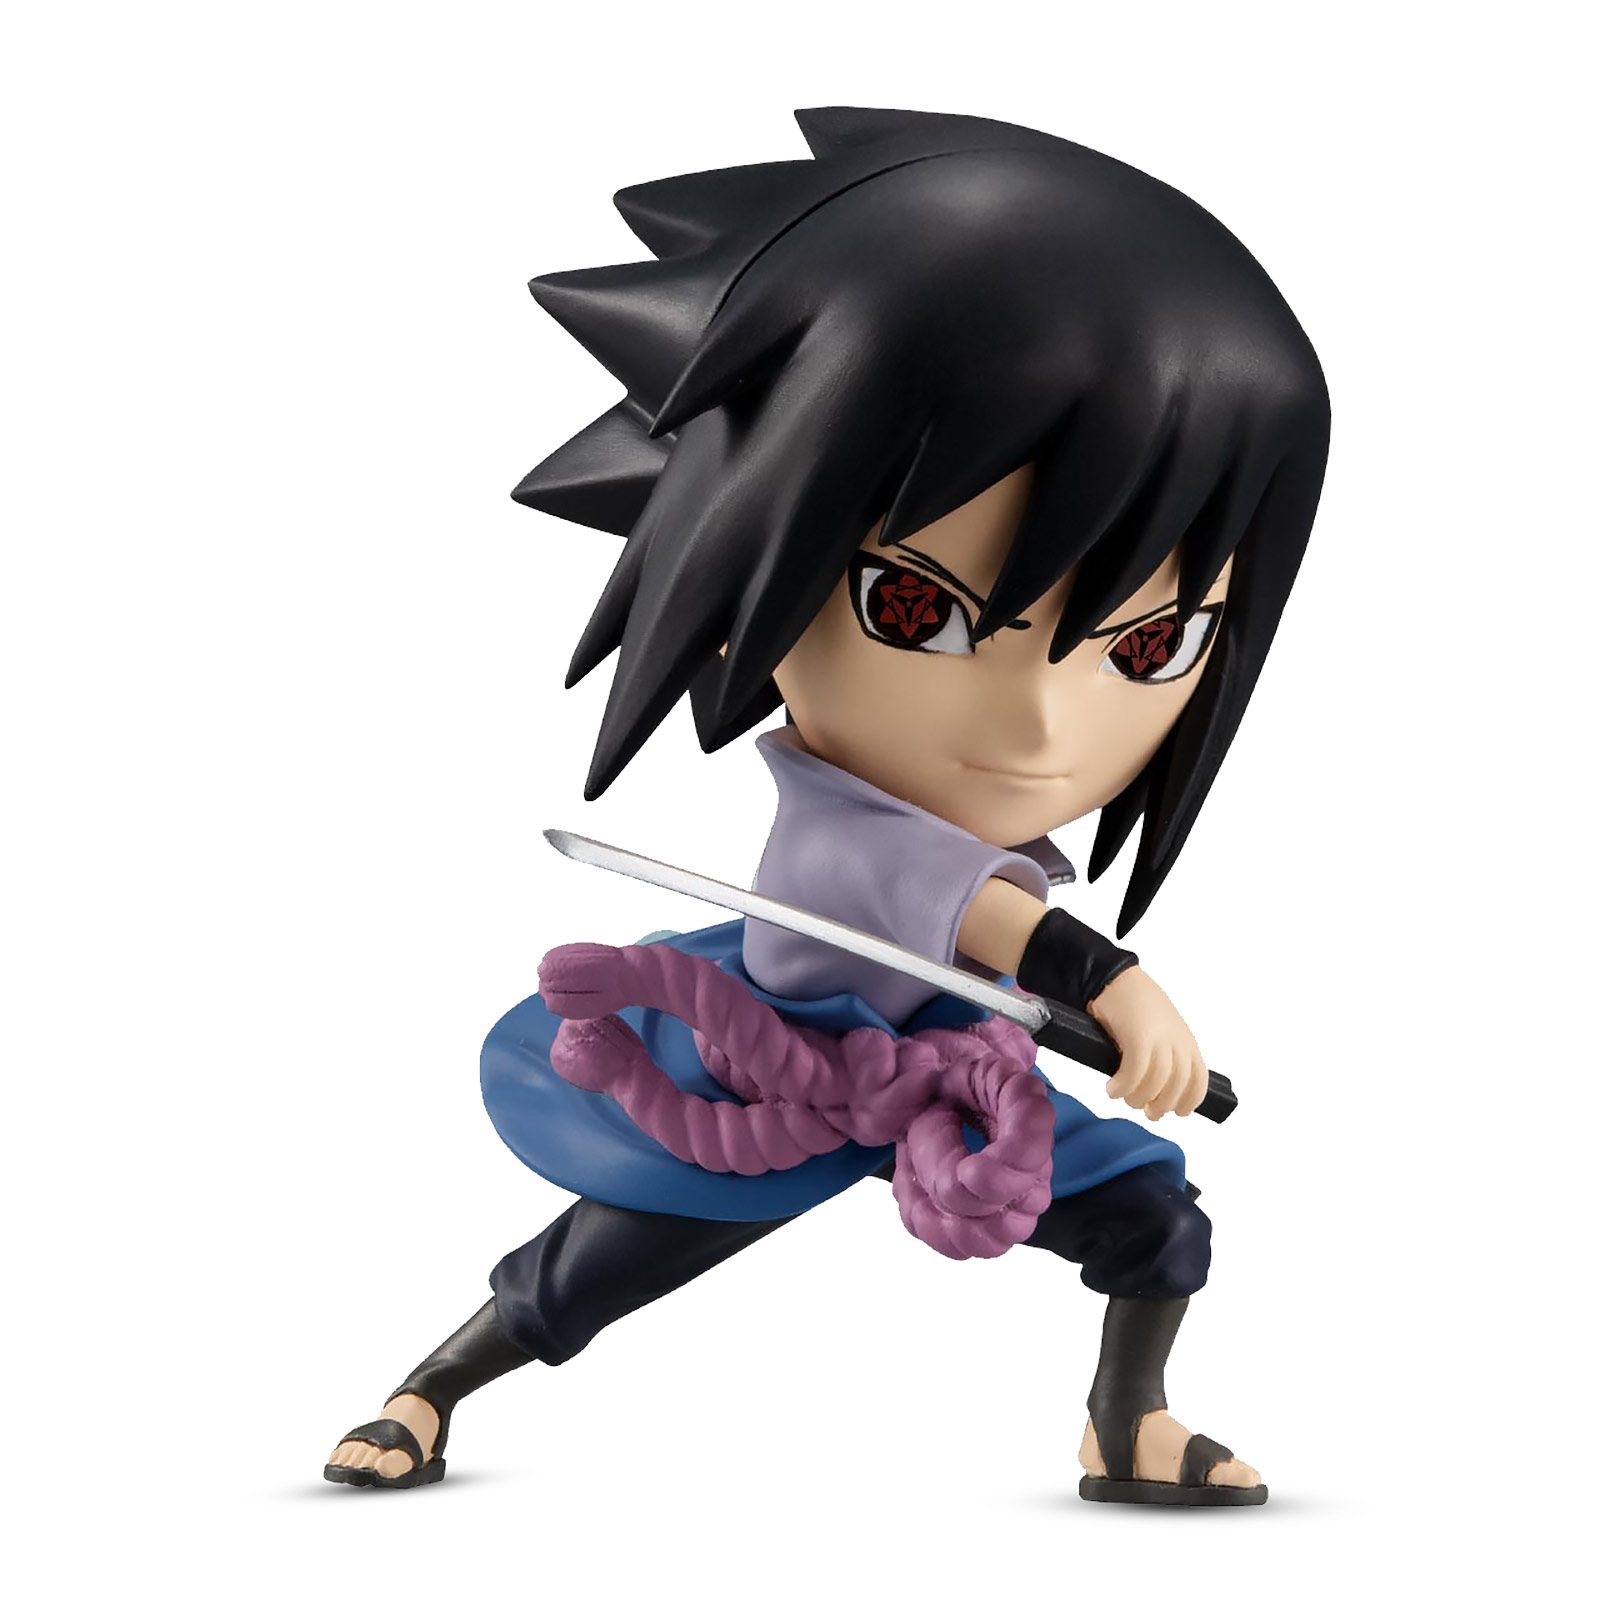 Naruto Shippuden - Sasuke Uchiha Chibi Figure